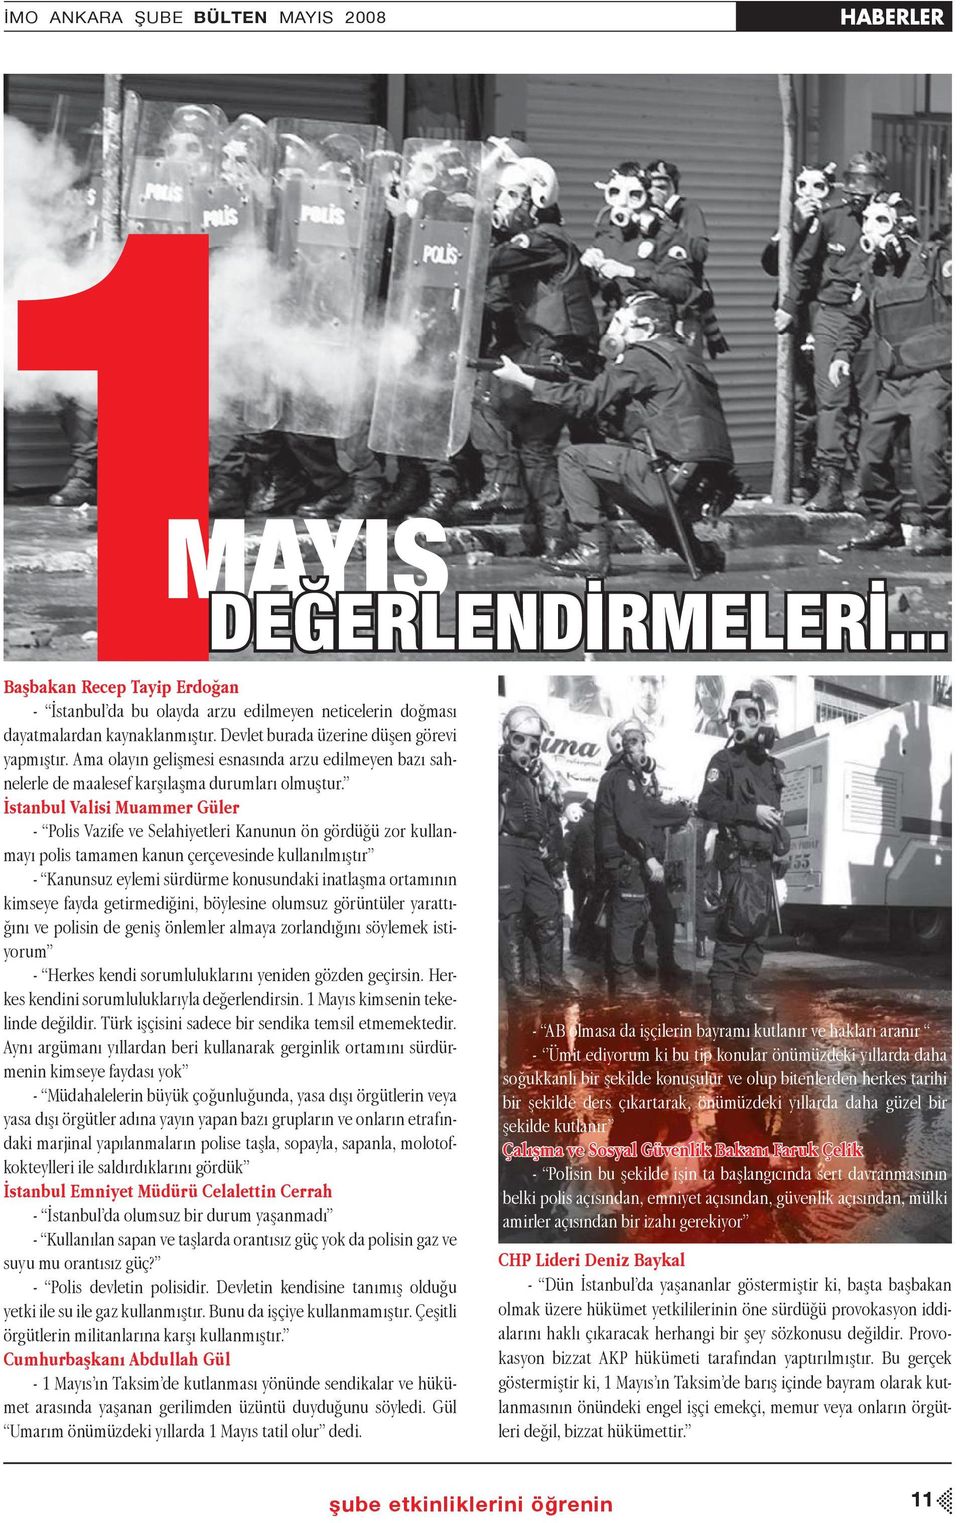 İstanbul Valisi Muammer Güler - Polis Vazife ve Selahiyetleri Kanunun ön gördüğü zor kullanmayı polis tamamen kanun çerçevesinde kullanılmıştır - Kanunsuz eylemi sürdürme konusundaki inatlaşma